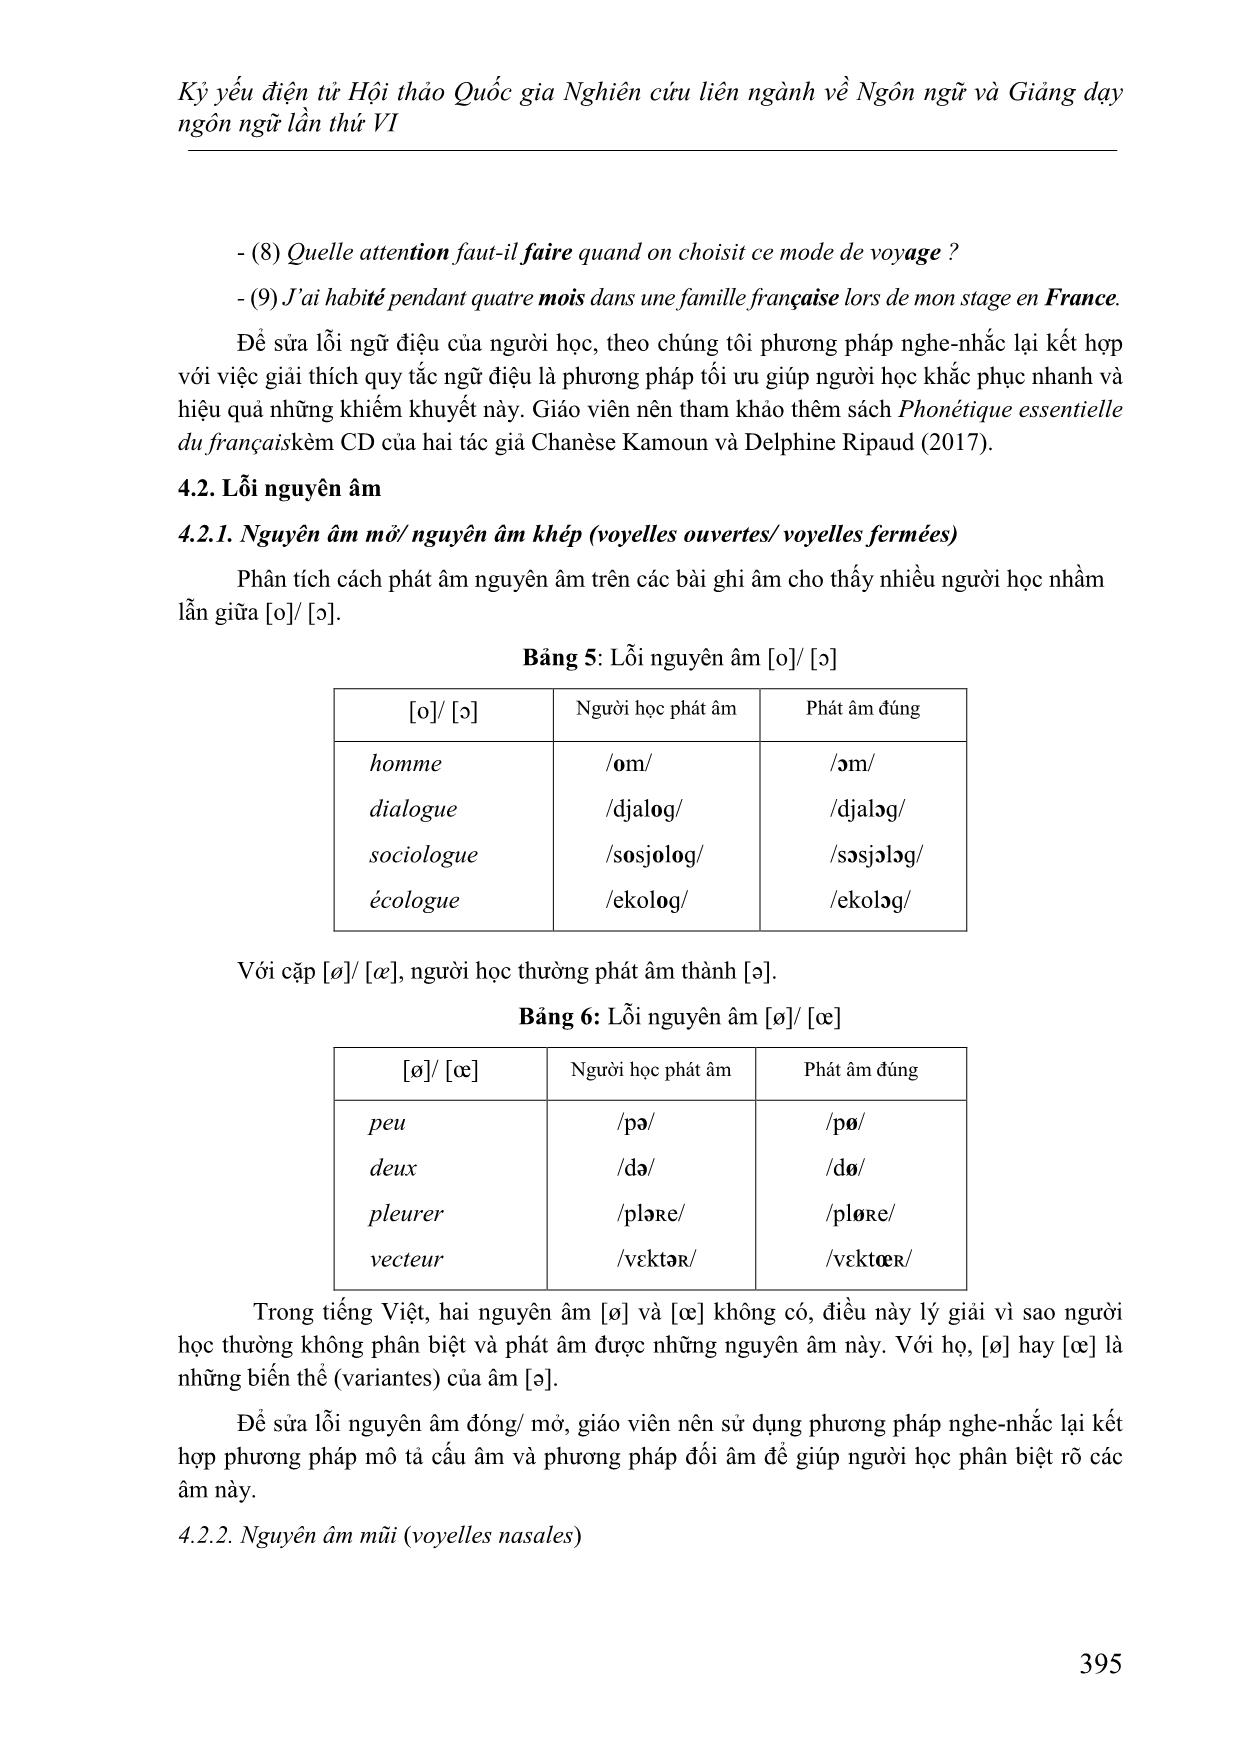 Nghiên cứu lỗi phát âm của người Việt học tiếng Pháp nhìn từ góc độ ngữ âm - âm vị học trang 8